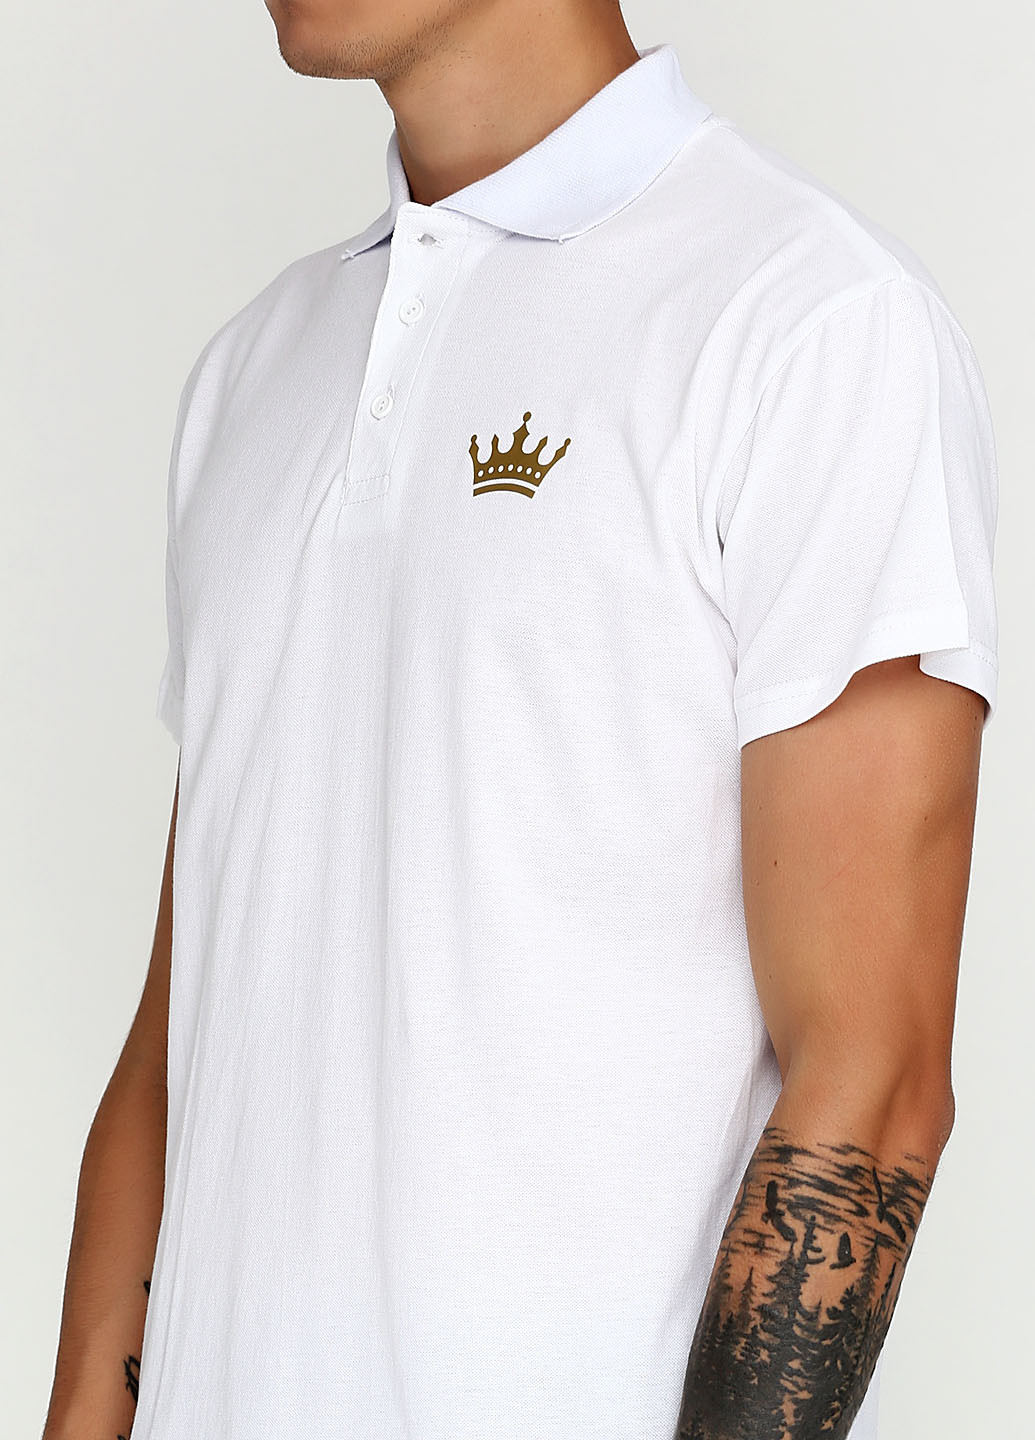 Белая футболка-поло для мужчин Tryapos с рисунком